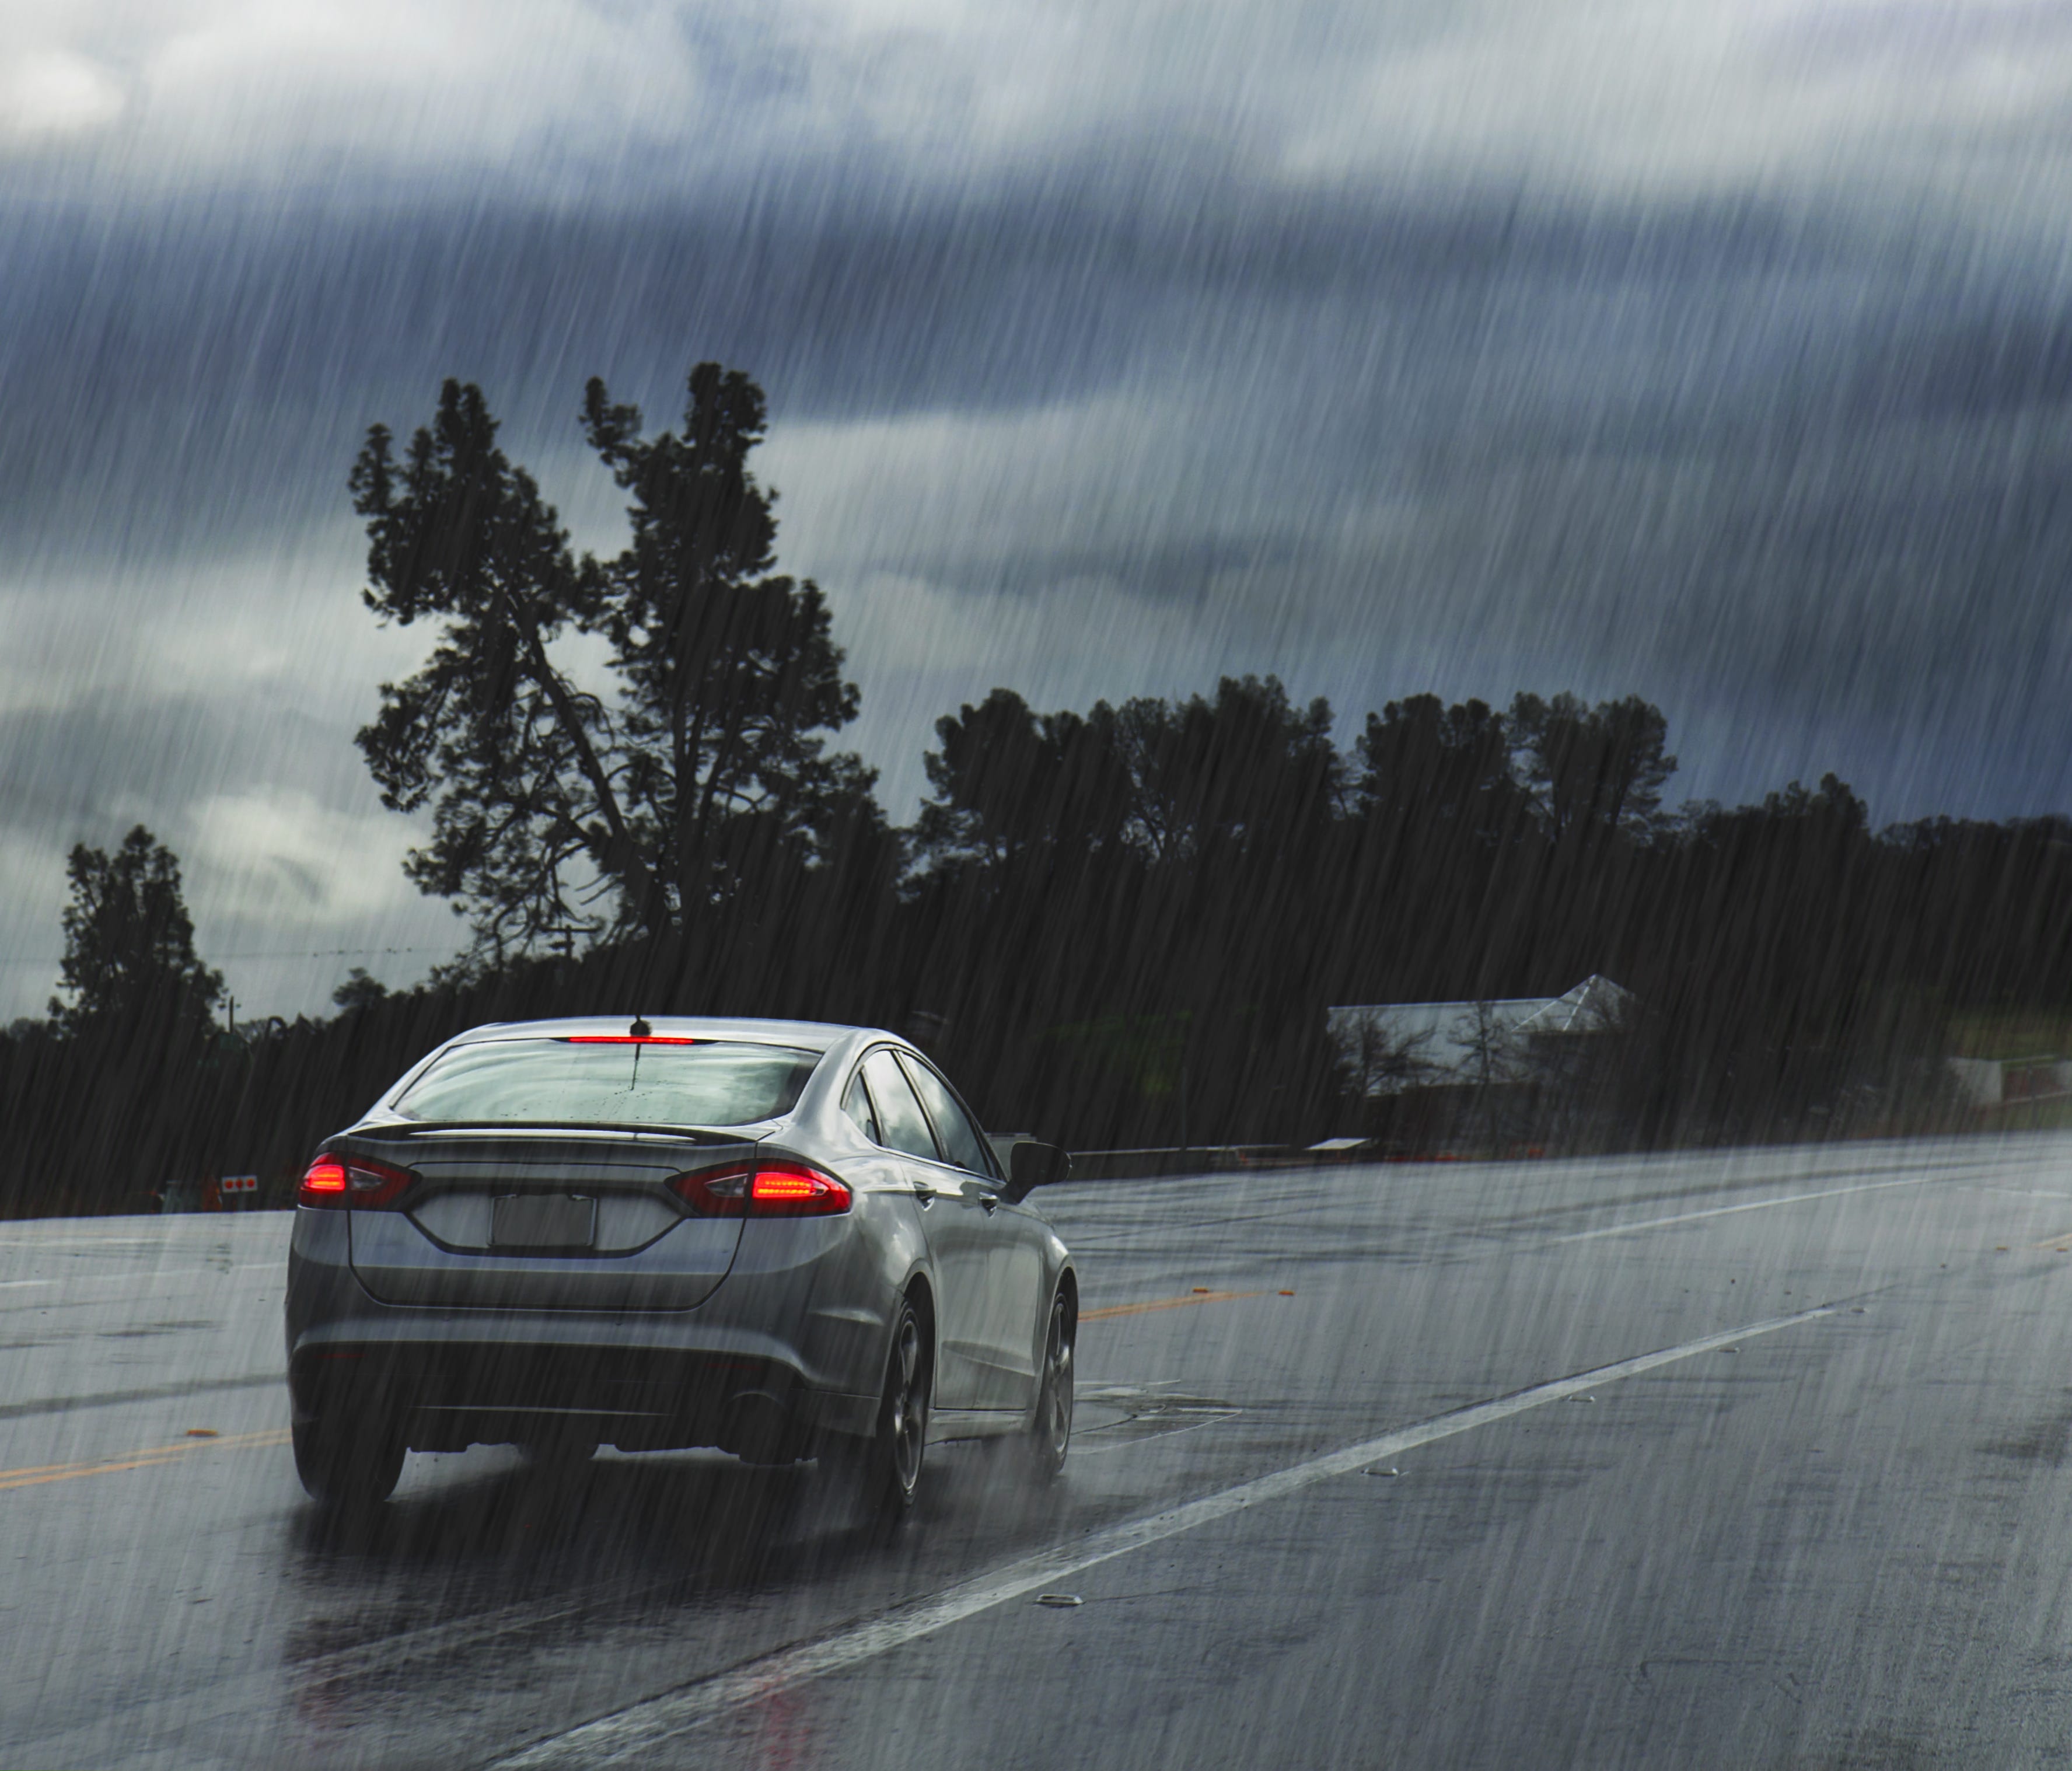 Rainy road with car